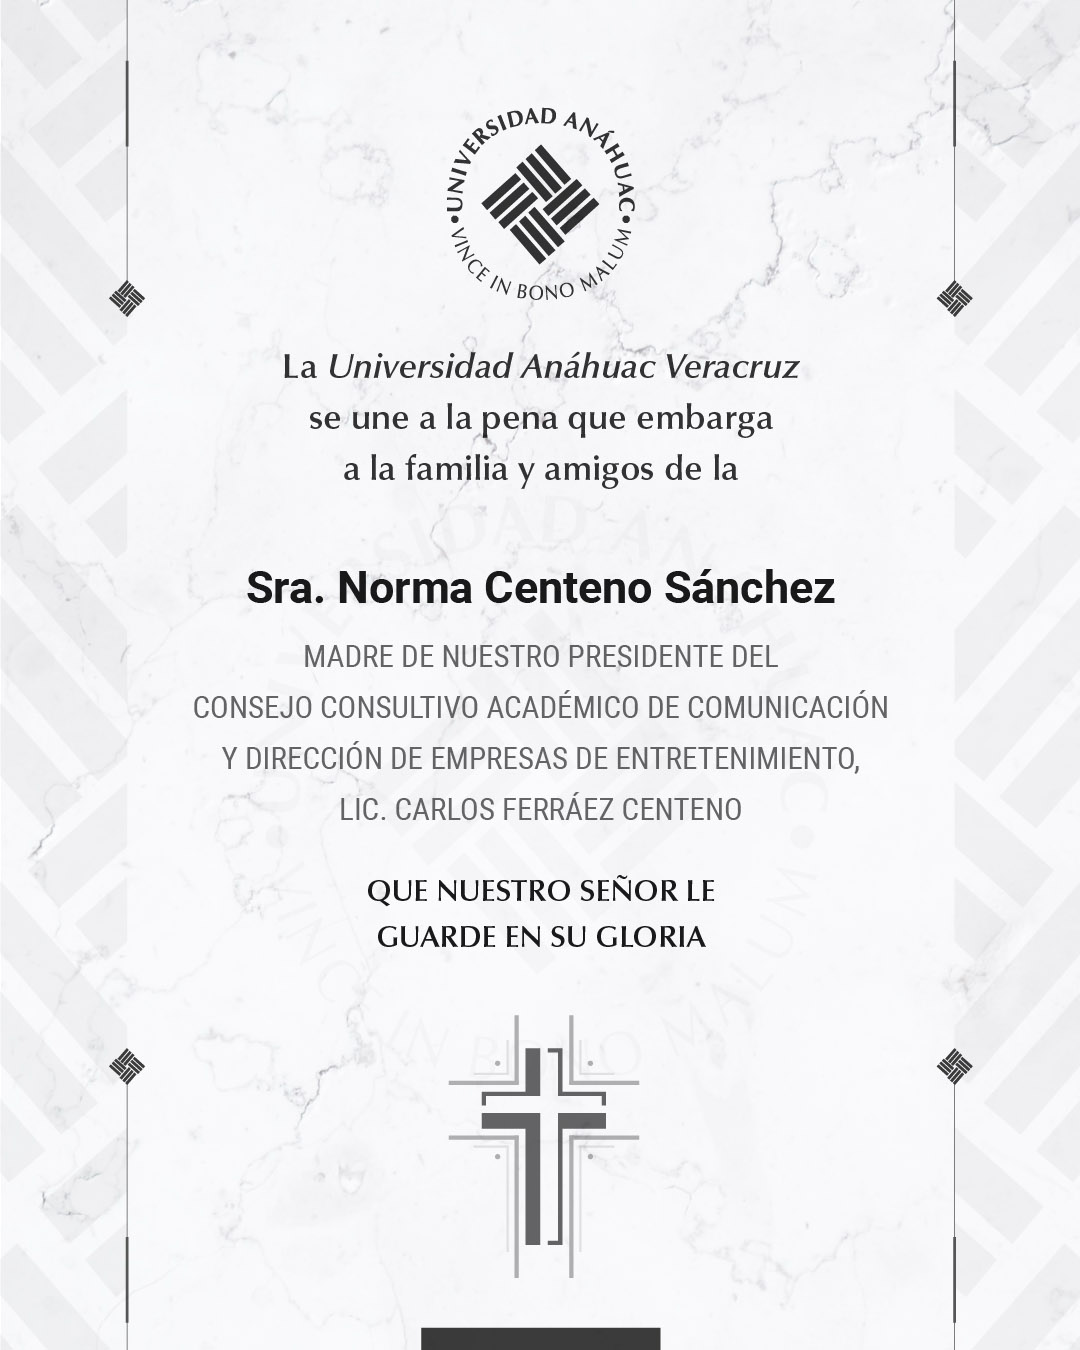 11 / 18 - Sra. Norma Centeno Sánchez